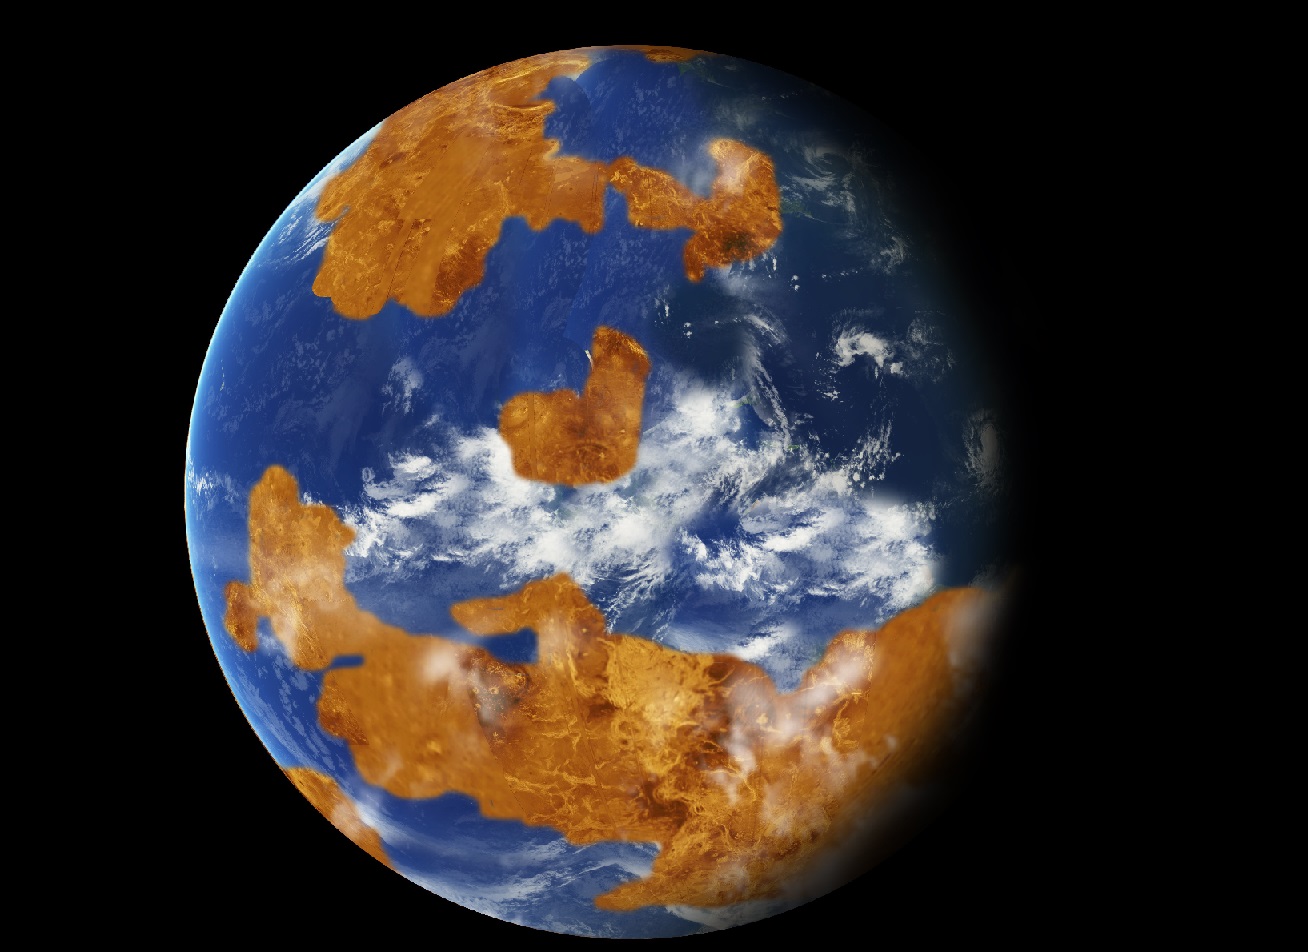 Venus pudo haber tenido océanos en el pasado, revela simulación